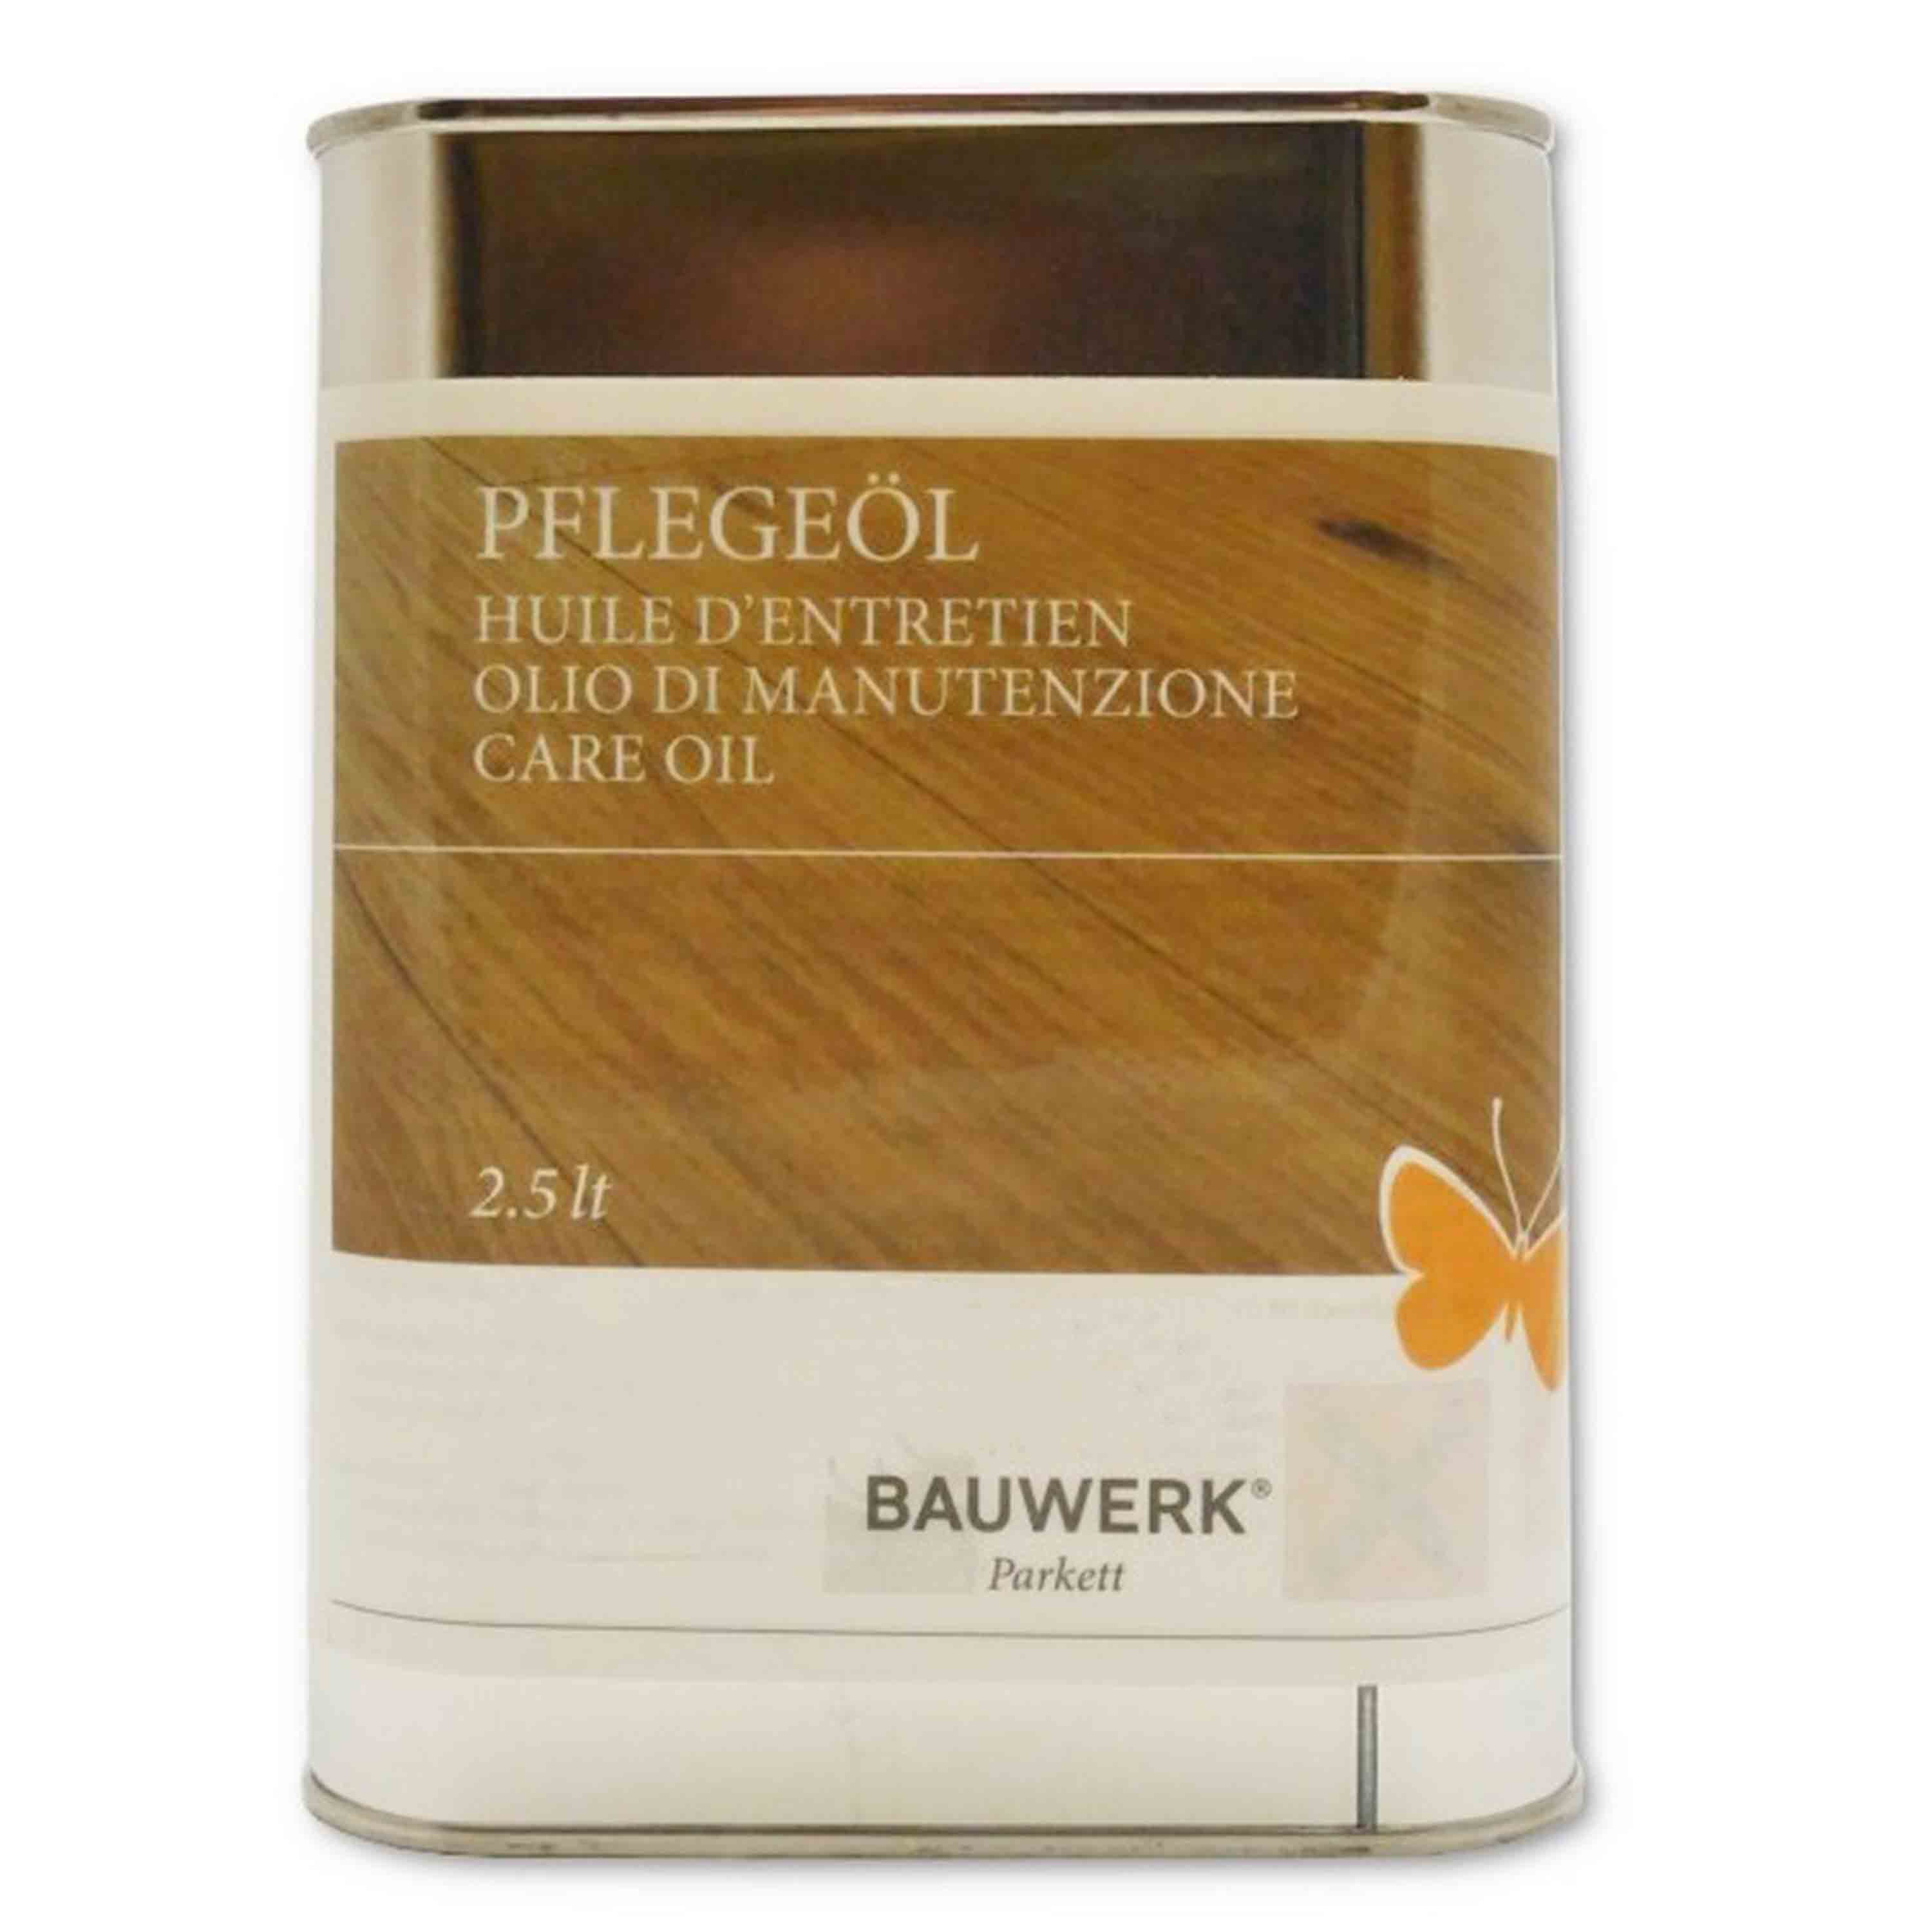 Olio di manutenzione BAUWERK incolore, per la cura ordinaria del Parquet Oliato - 2.5lt